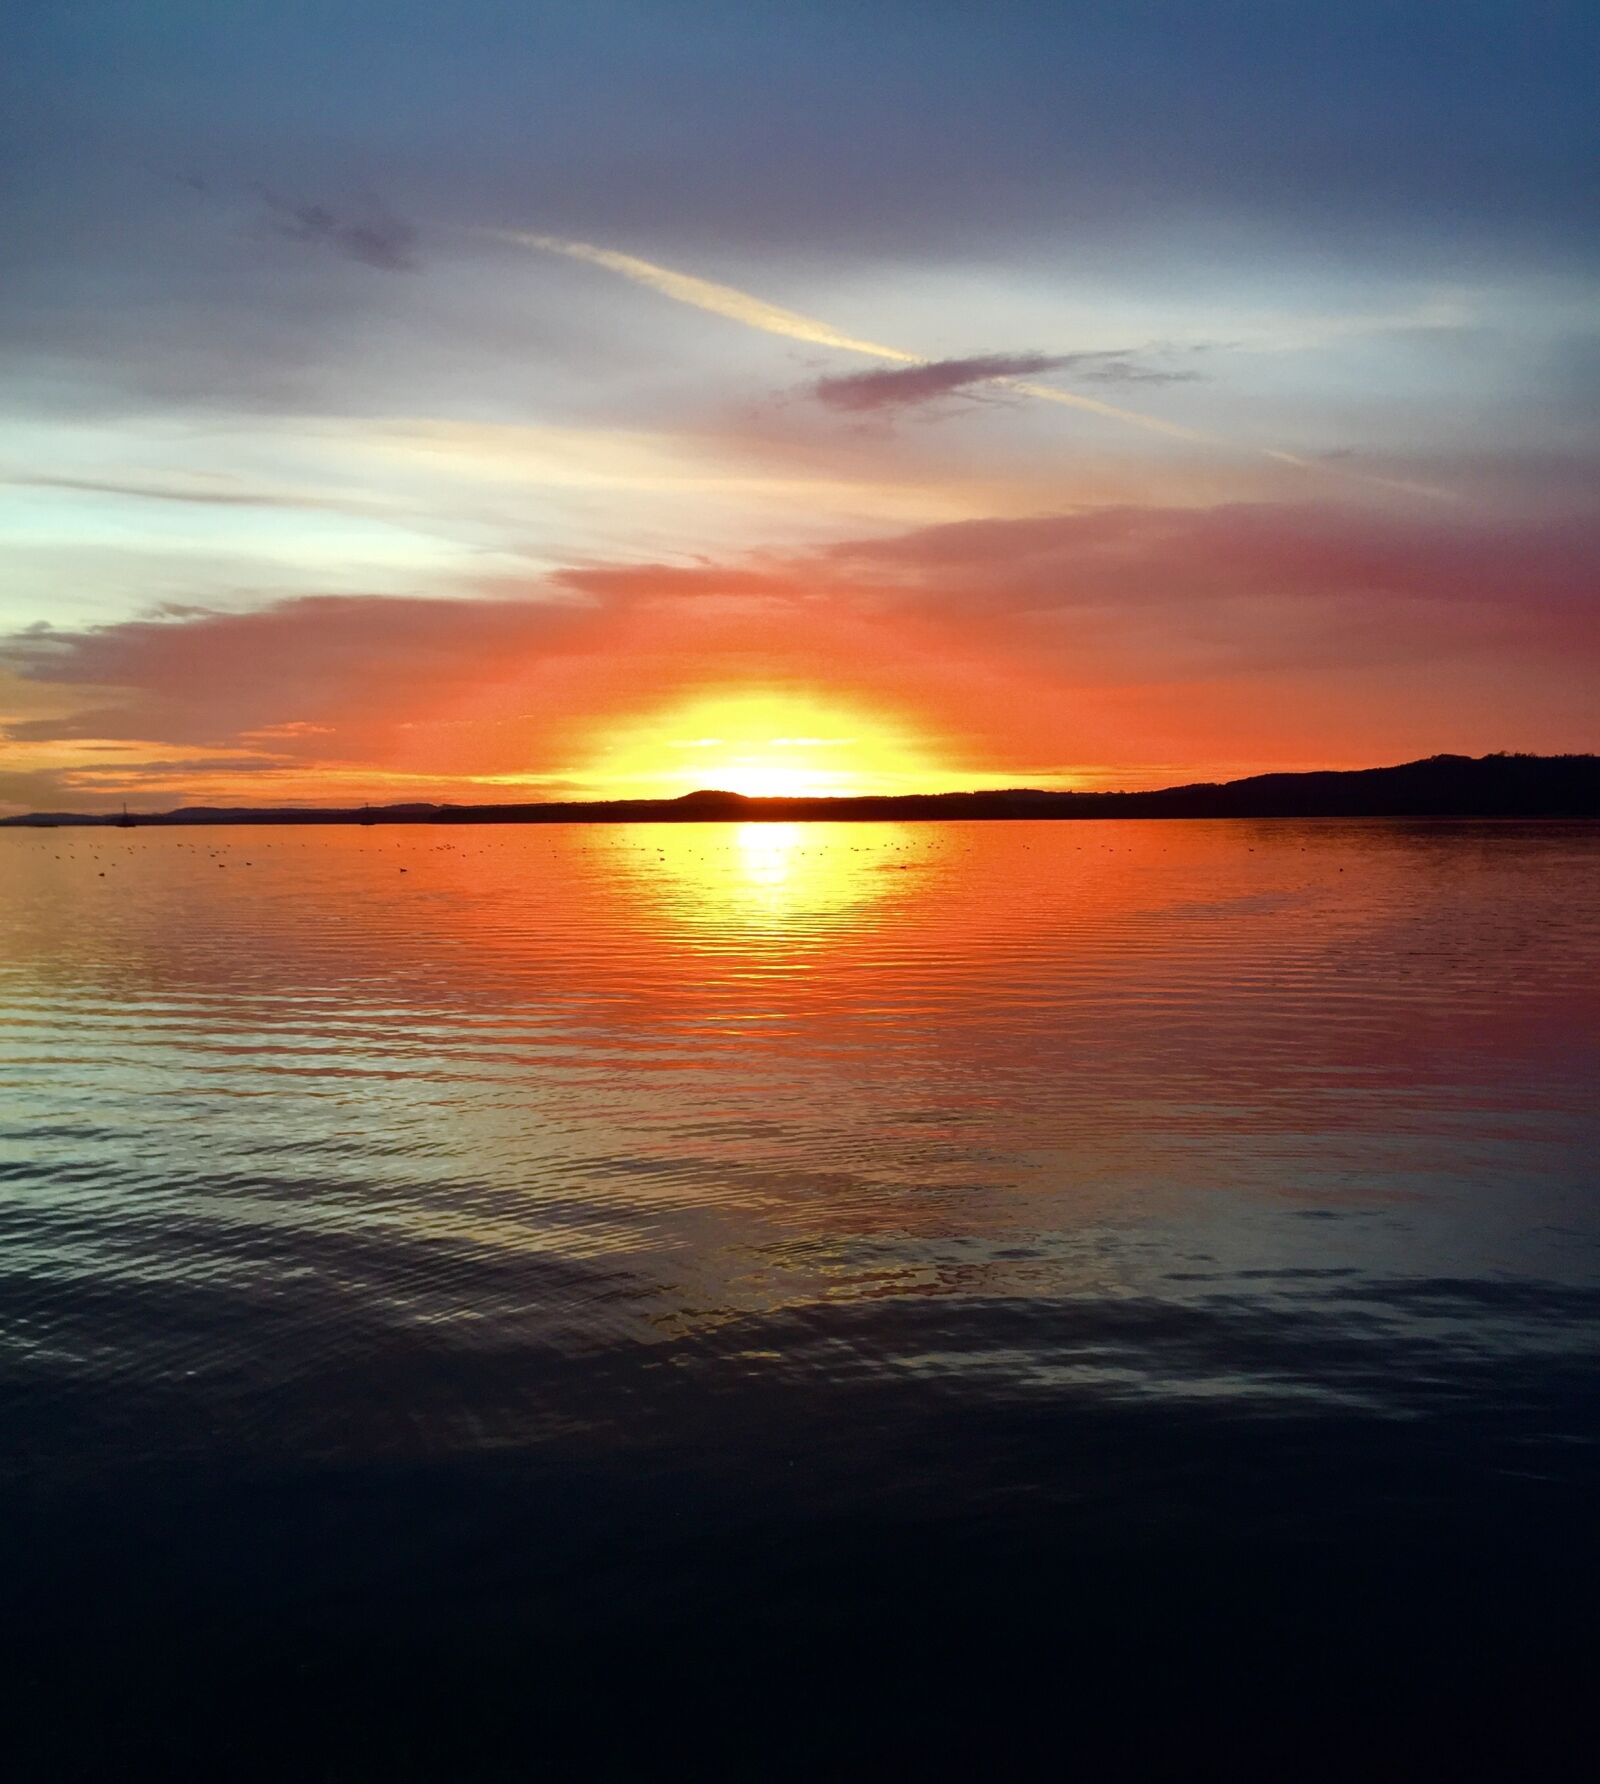 Apple iPhone 6 sample photo. Sunset, lake, reflection photography